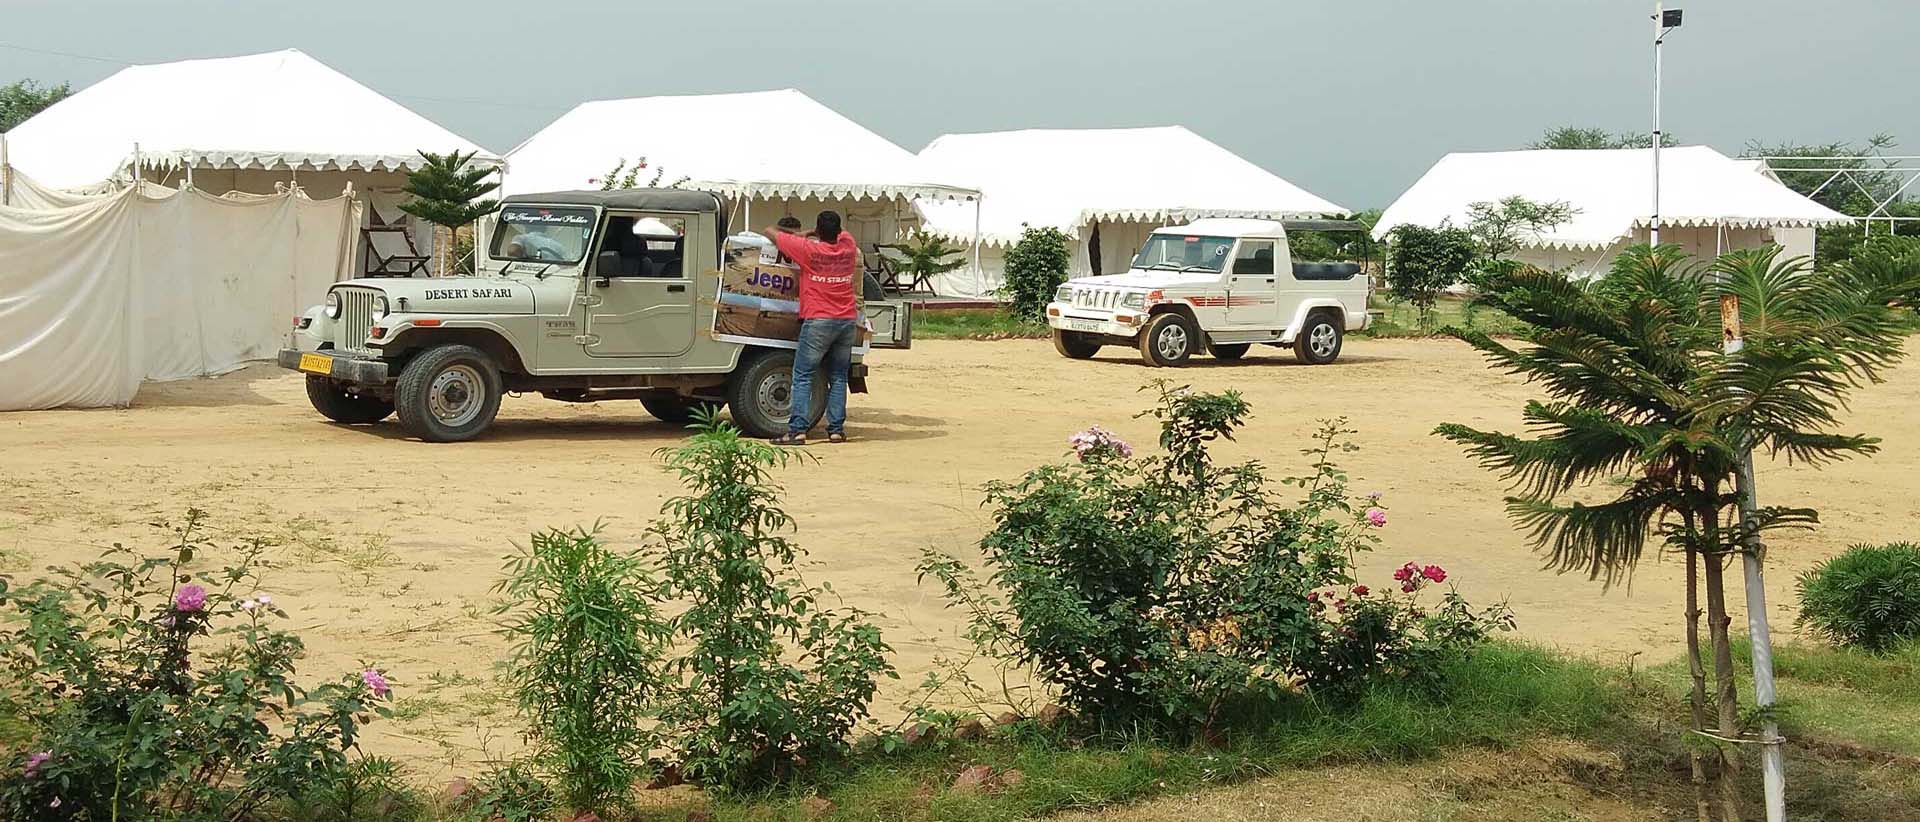 camp pushkar,desert camp,tent pushkar,fair accomodation